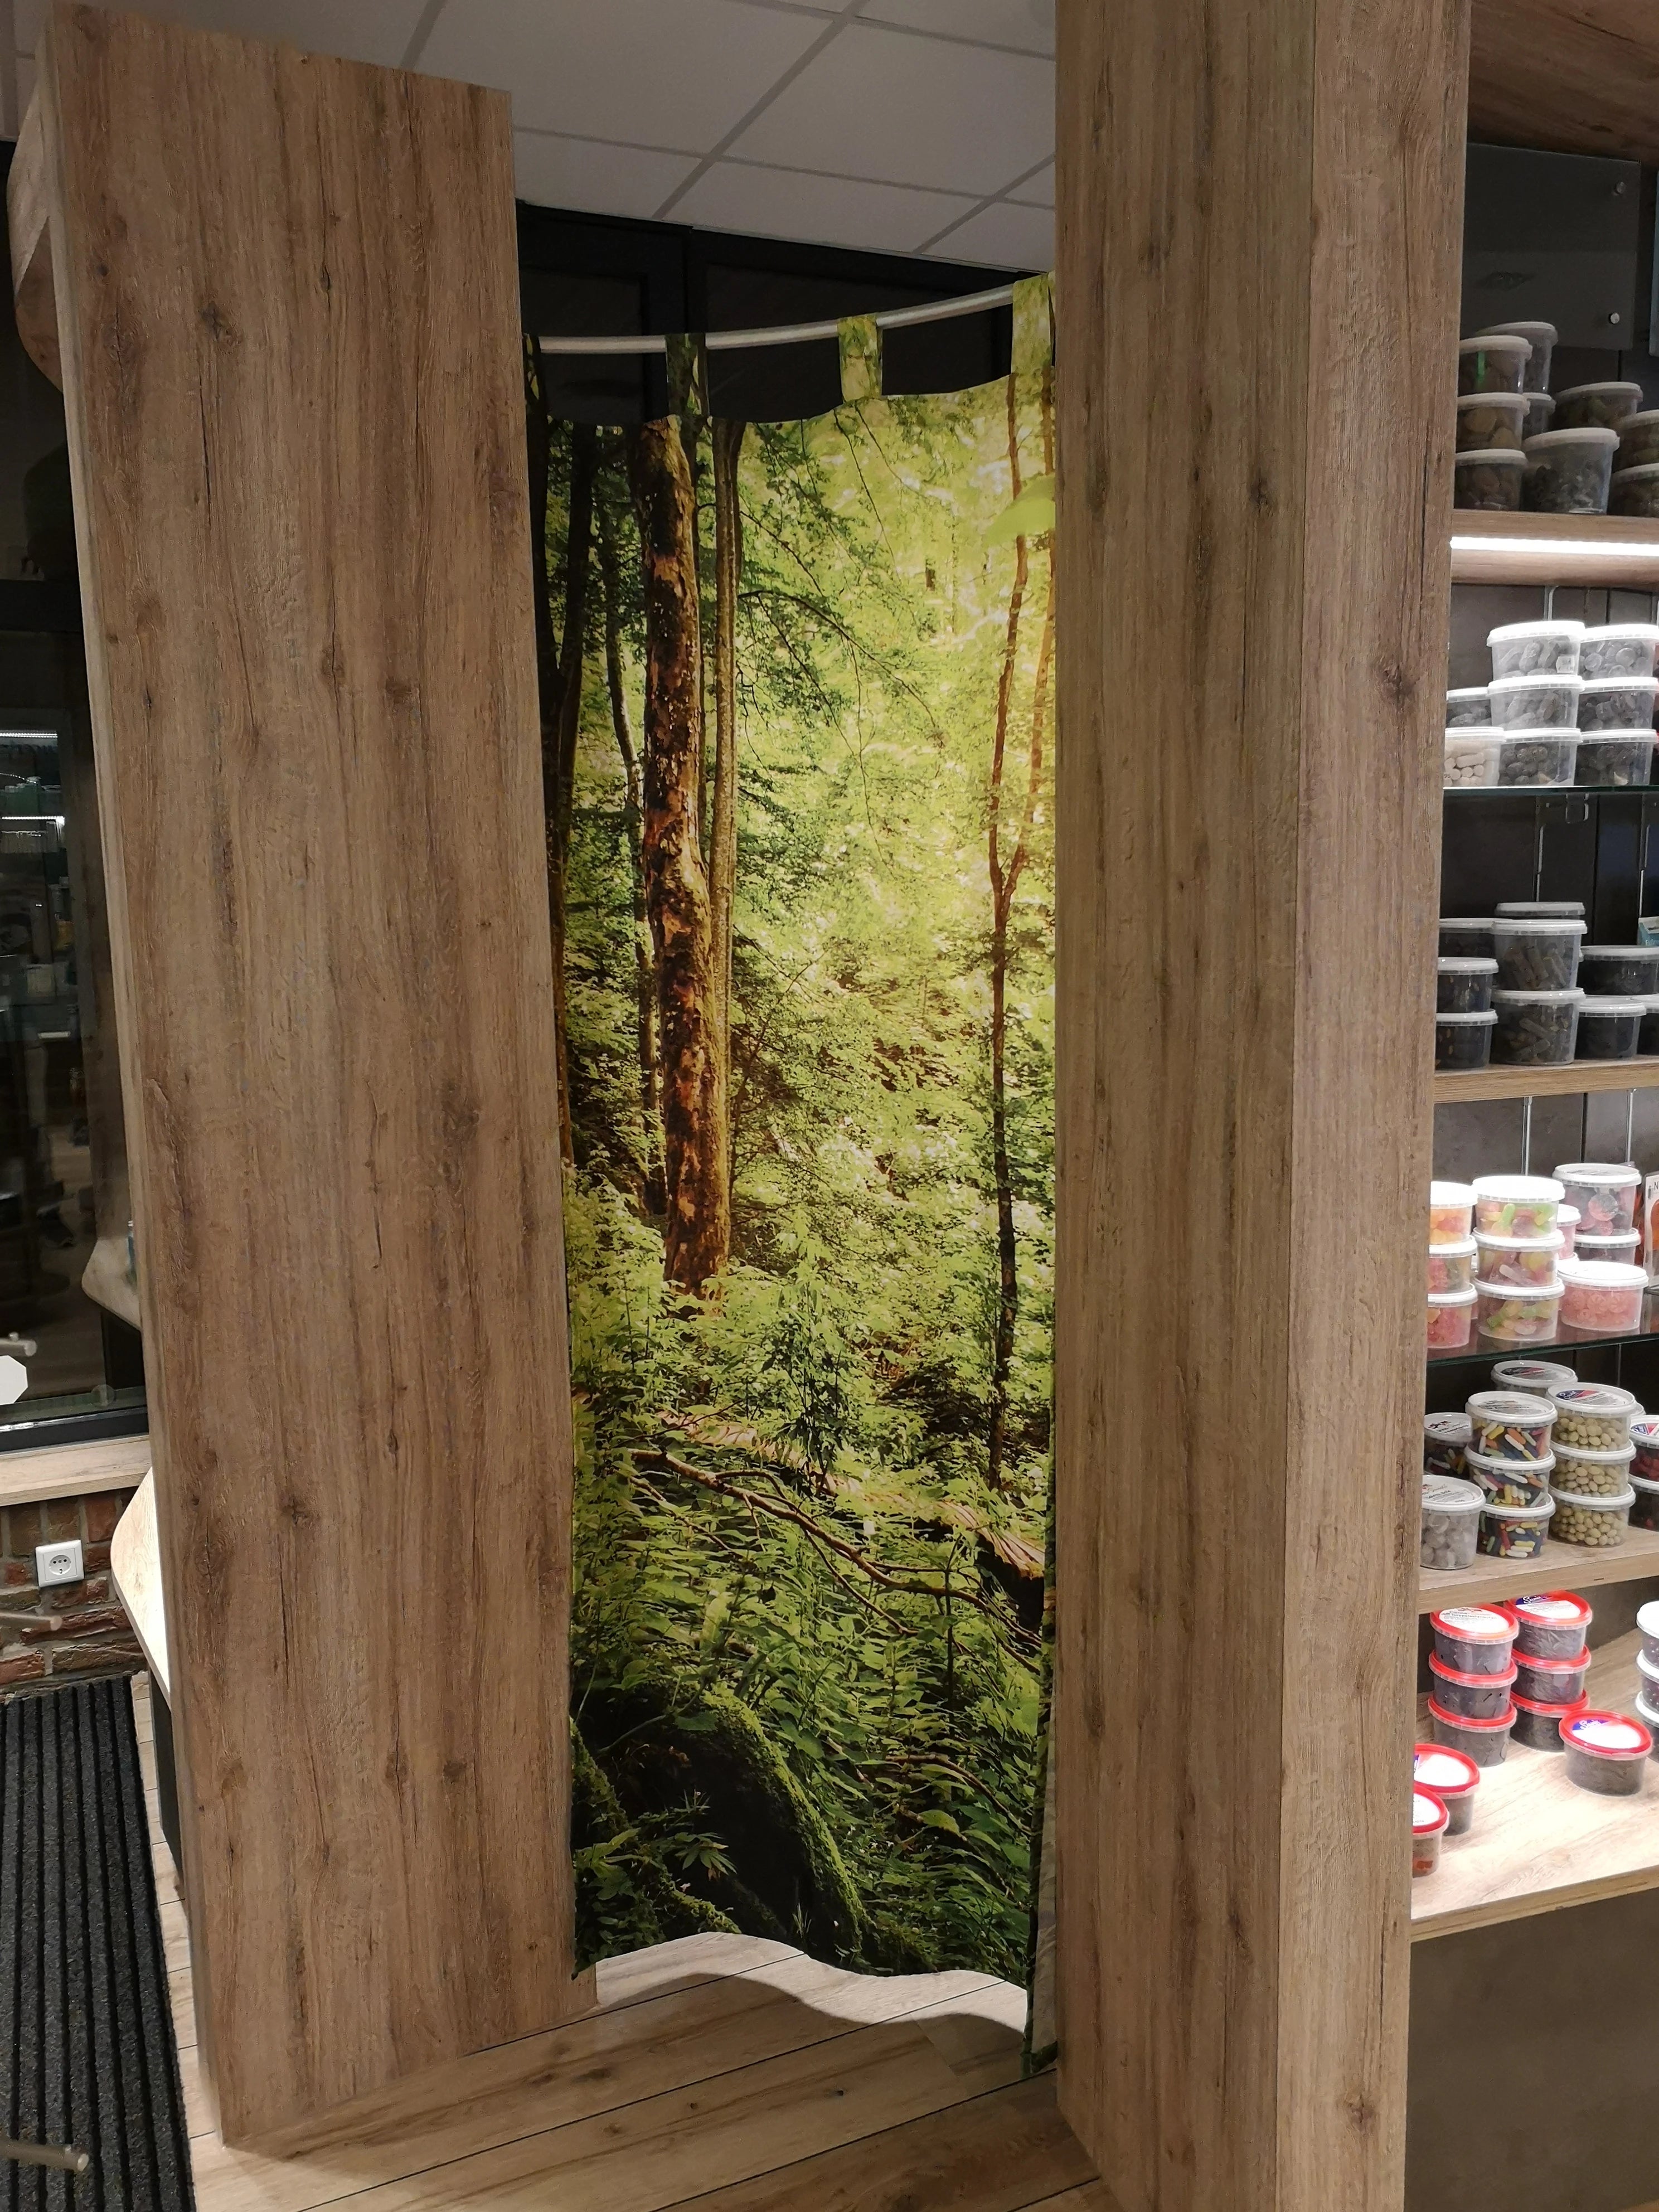 Bedruckter Foto-Vorhang als Raumteiler mit Waldmotiv bedruckt in der Apotheke um den Mitarbeiterbereich vom Kundenraum abzutrennen